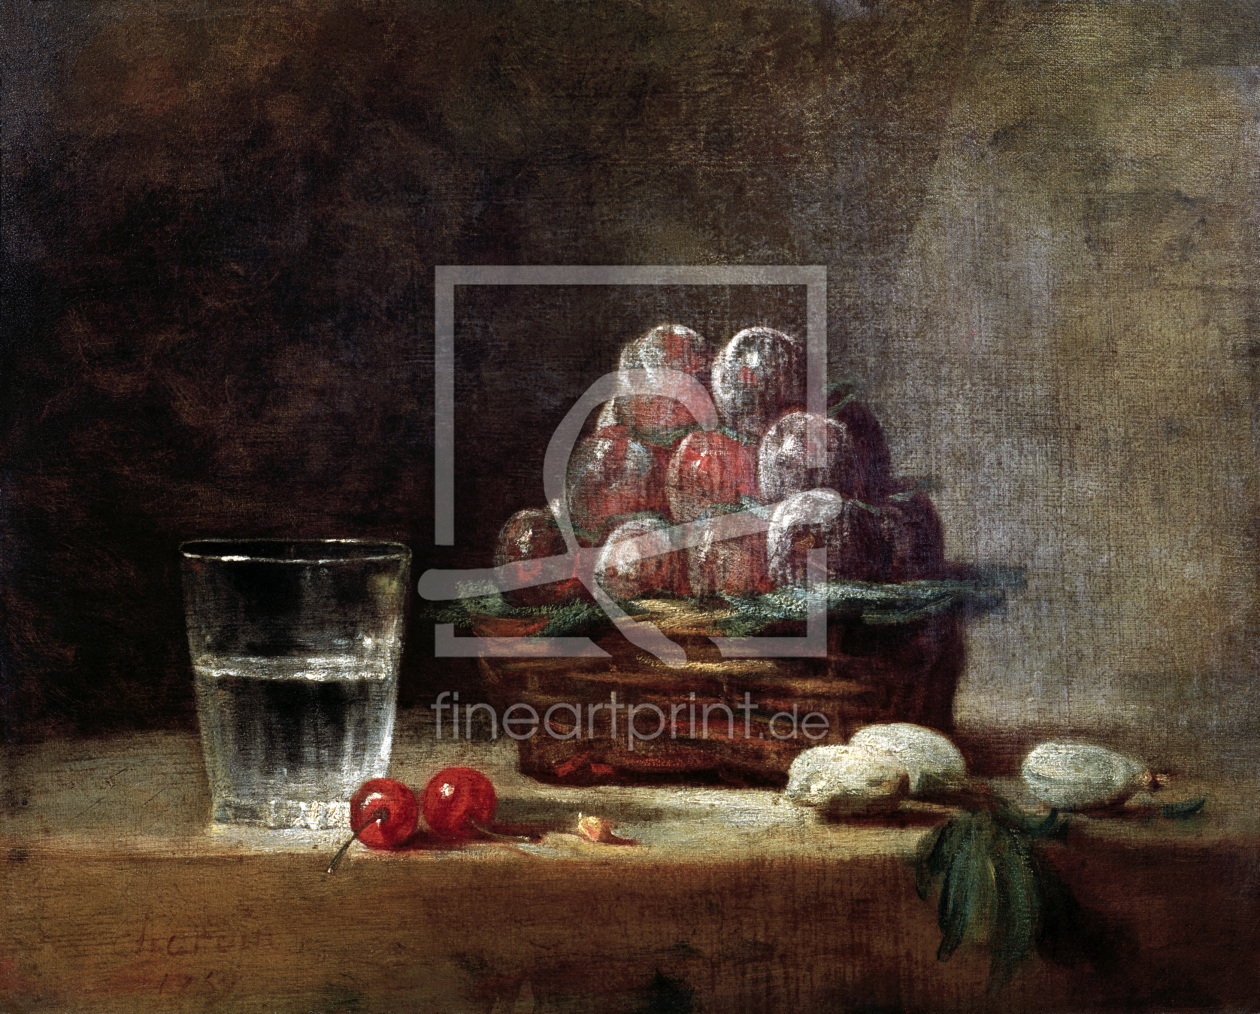 Bild-Nr.: 30007451 Chardin / Baket of Plums / 1759 erstellt von Chardin, Jean SimÃ©on